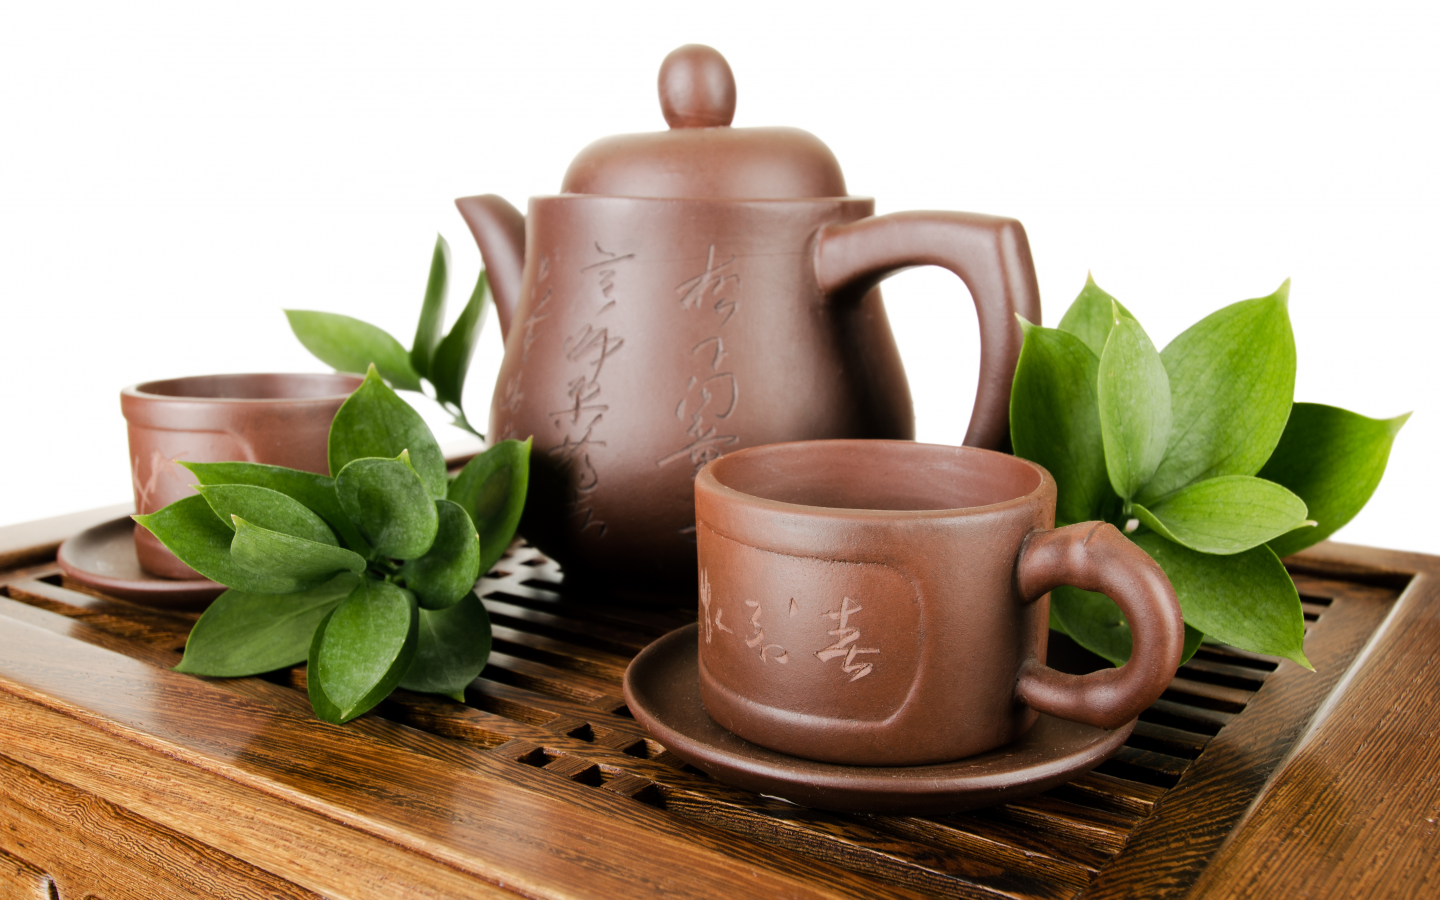 заварник, чай, посуда, листья, чашки, глиняная, чайник